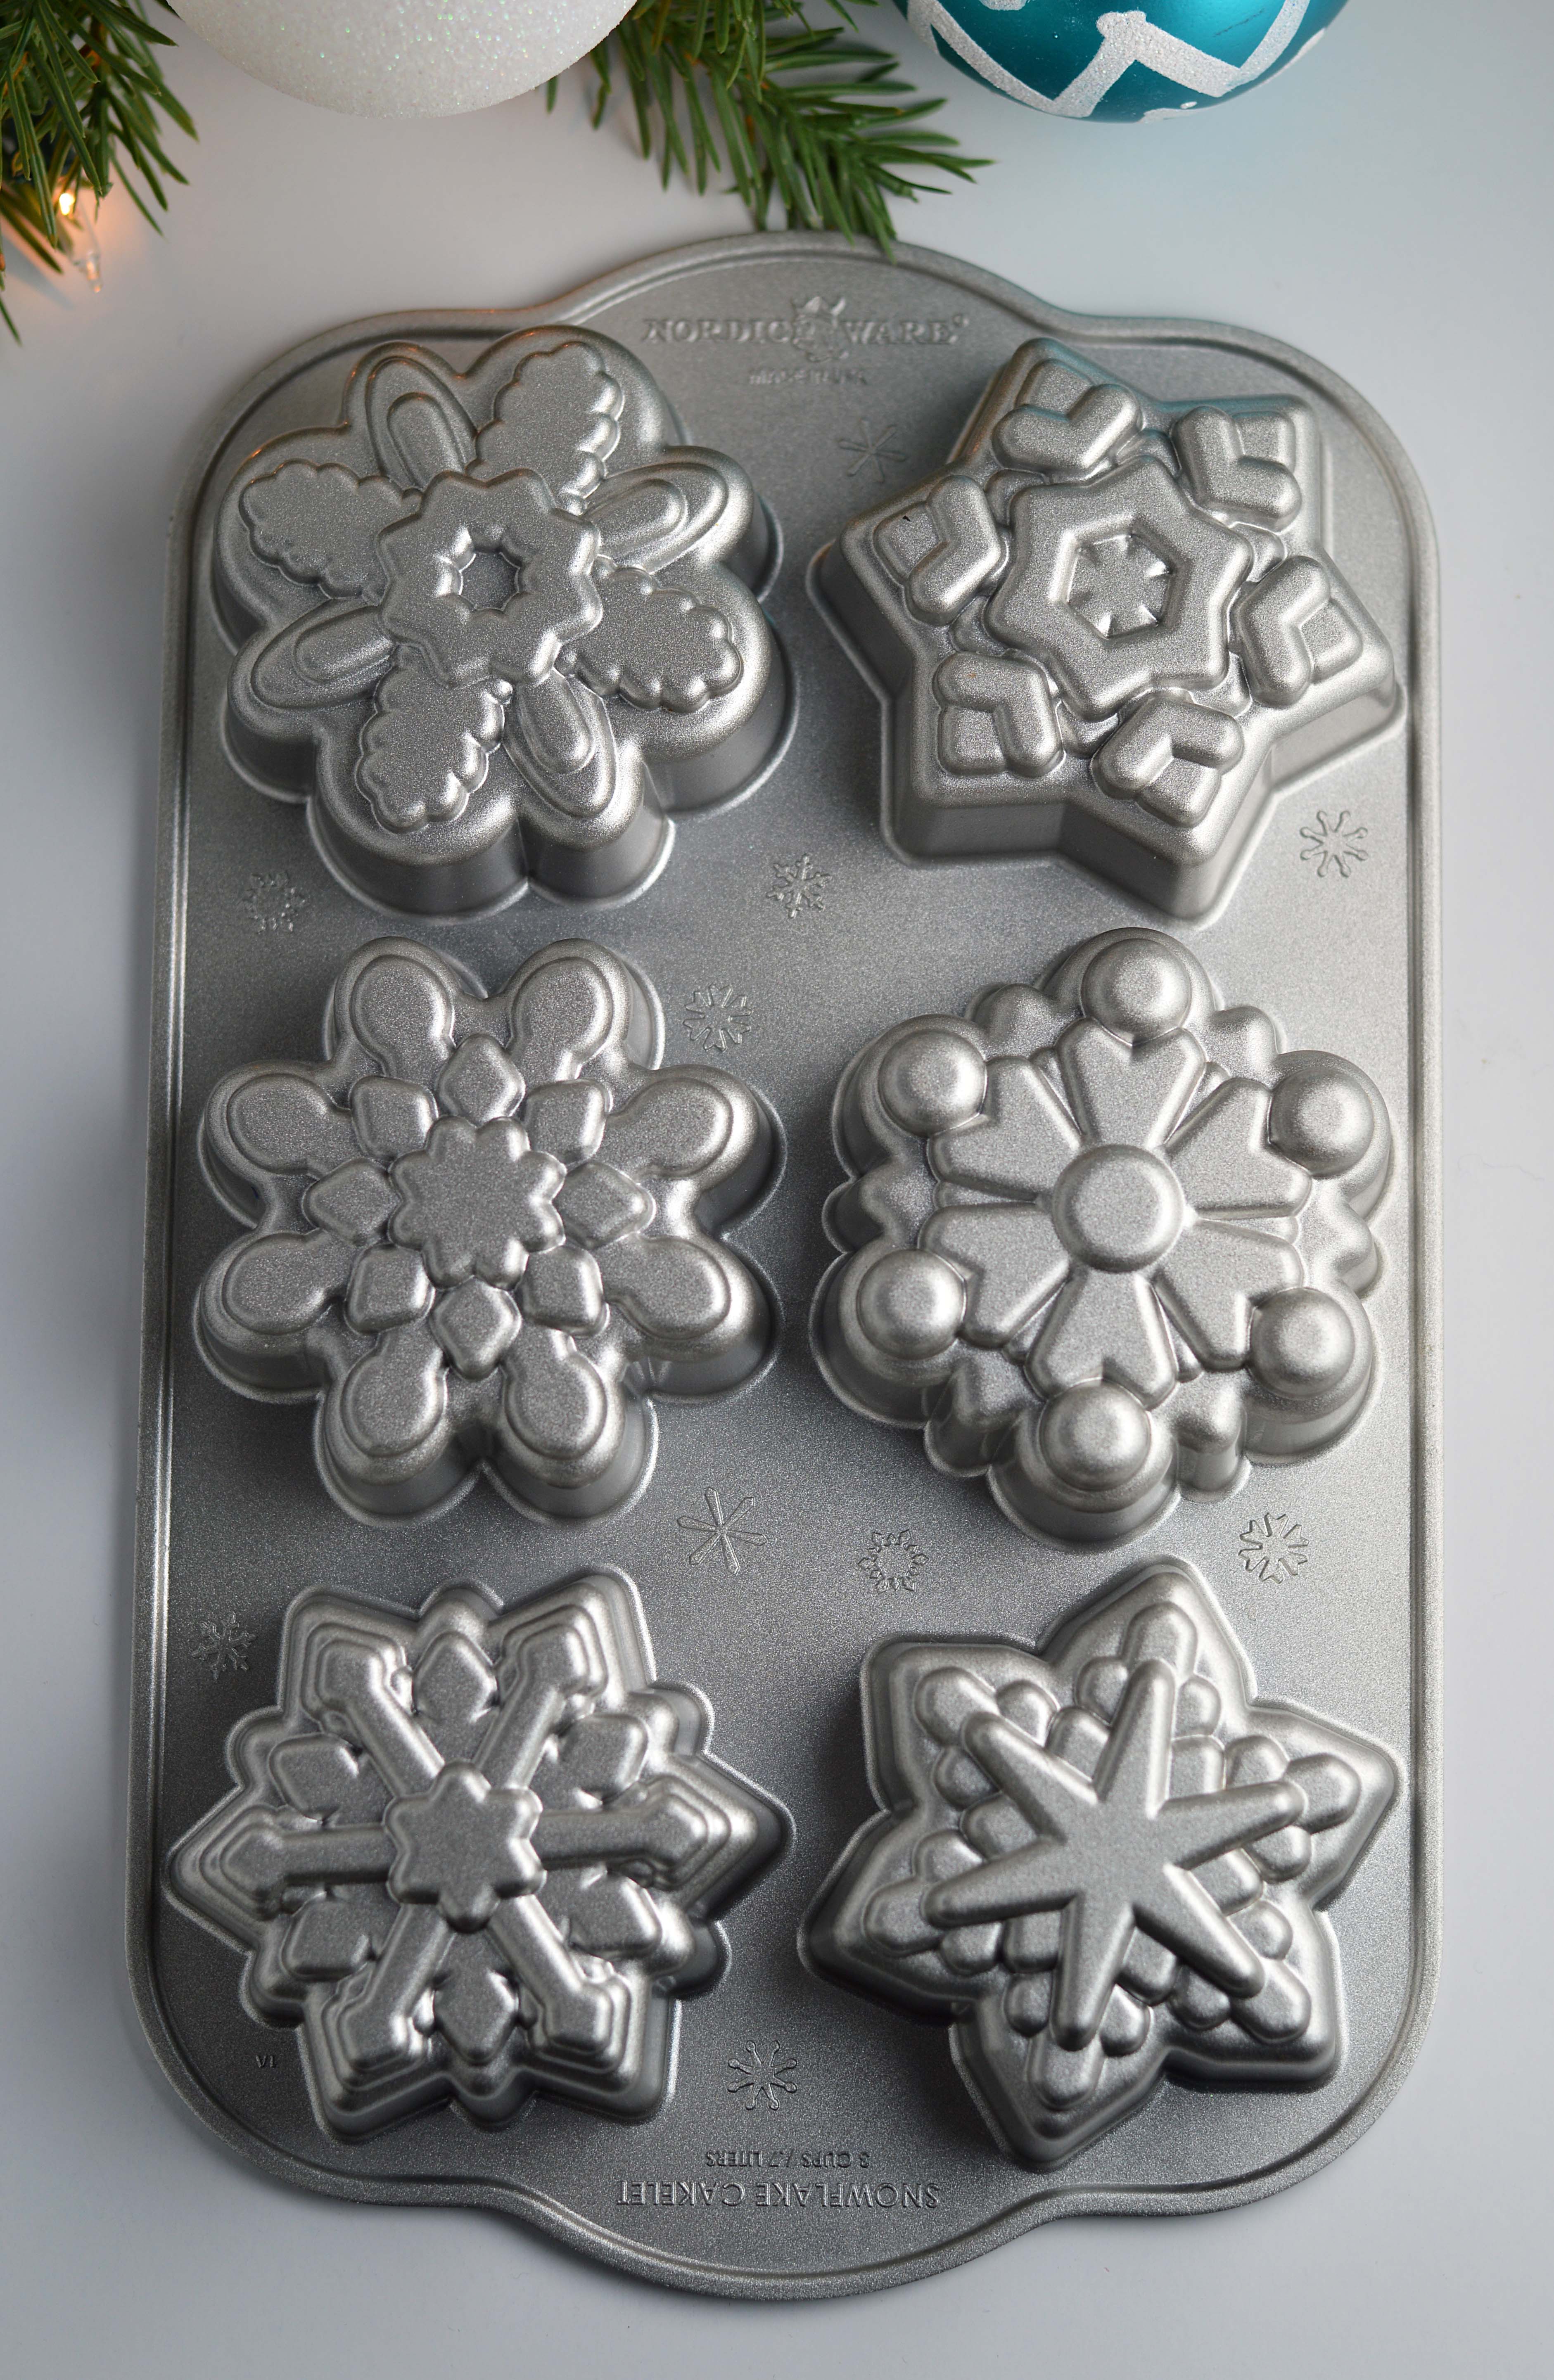 Frozen Snowflake Cakelet Pan